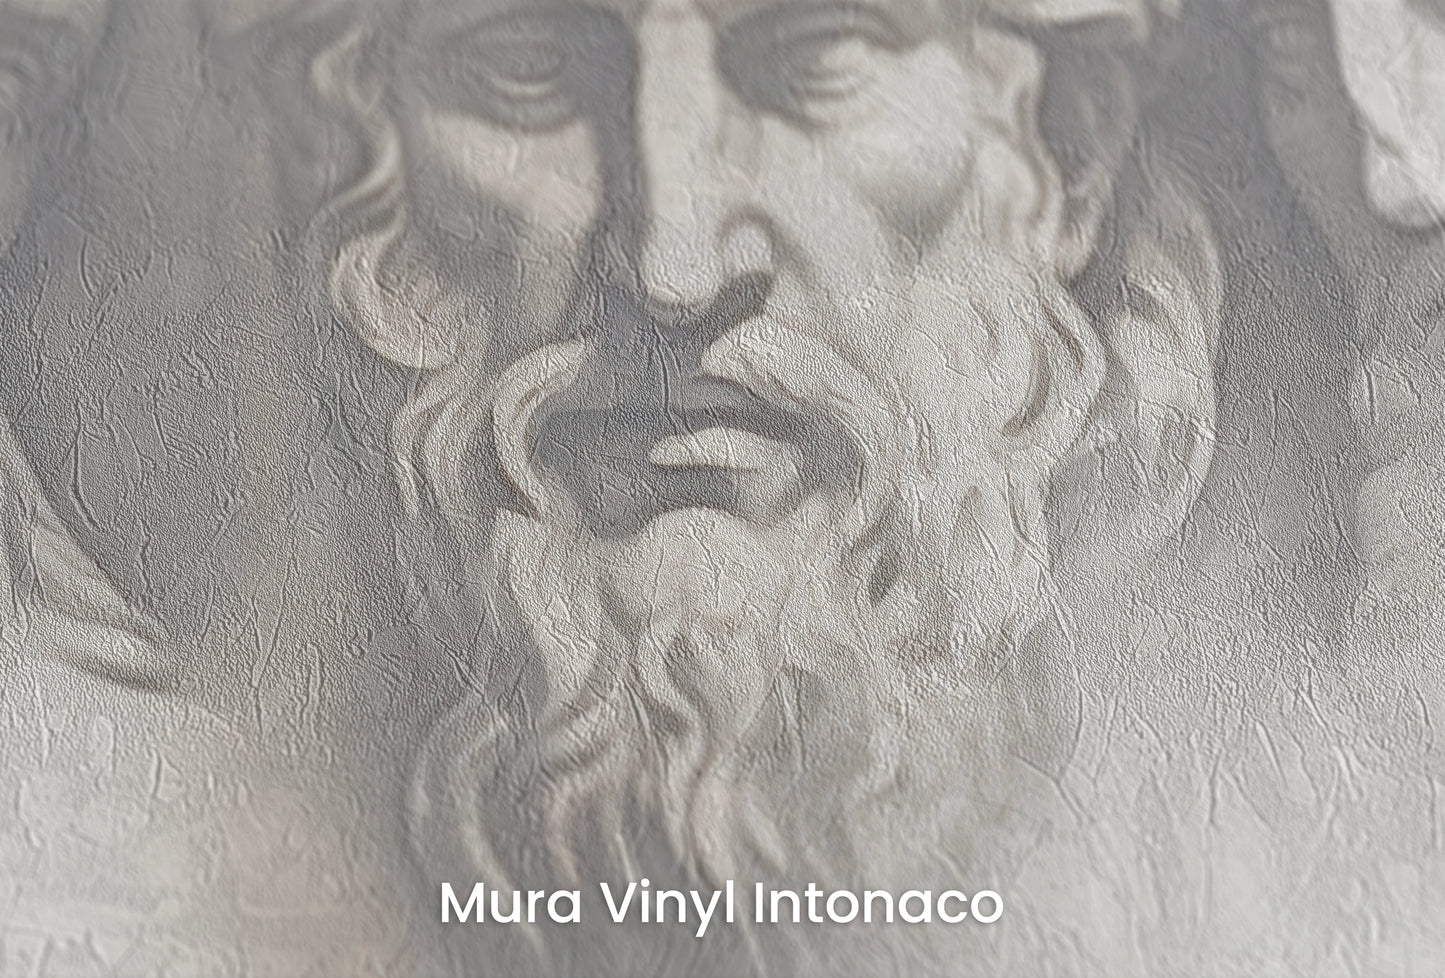 Zbliżenie na artystyczną fototapetę o nazwie Epicurean Reflection na podłożu Mura Vinyl Intonaco - struktura tartego tynku.